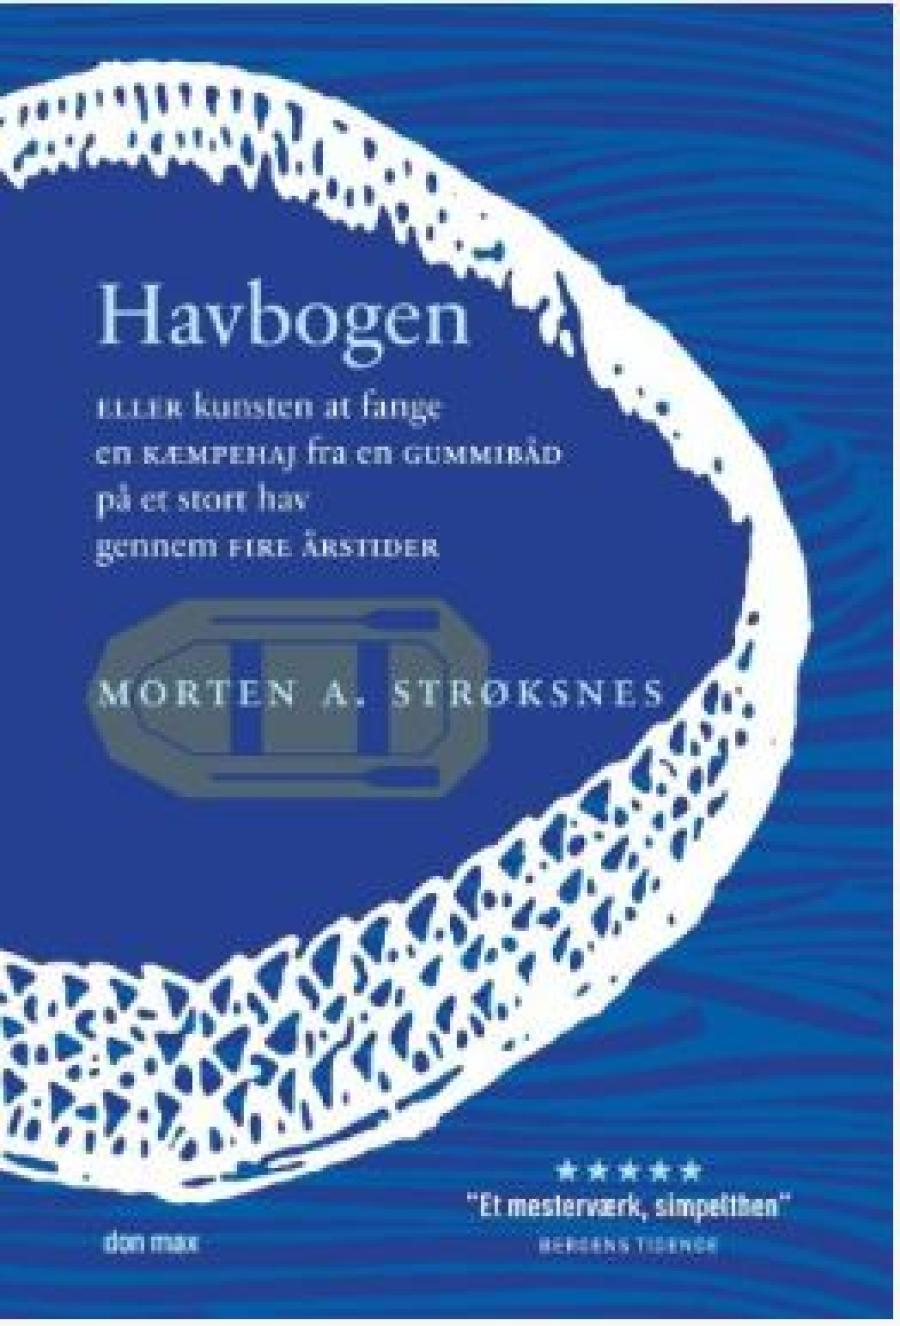 Morten A. Strøksnes, "Havbogen"